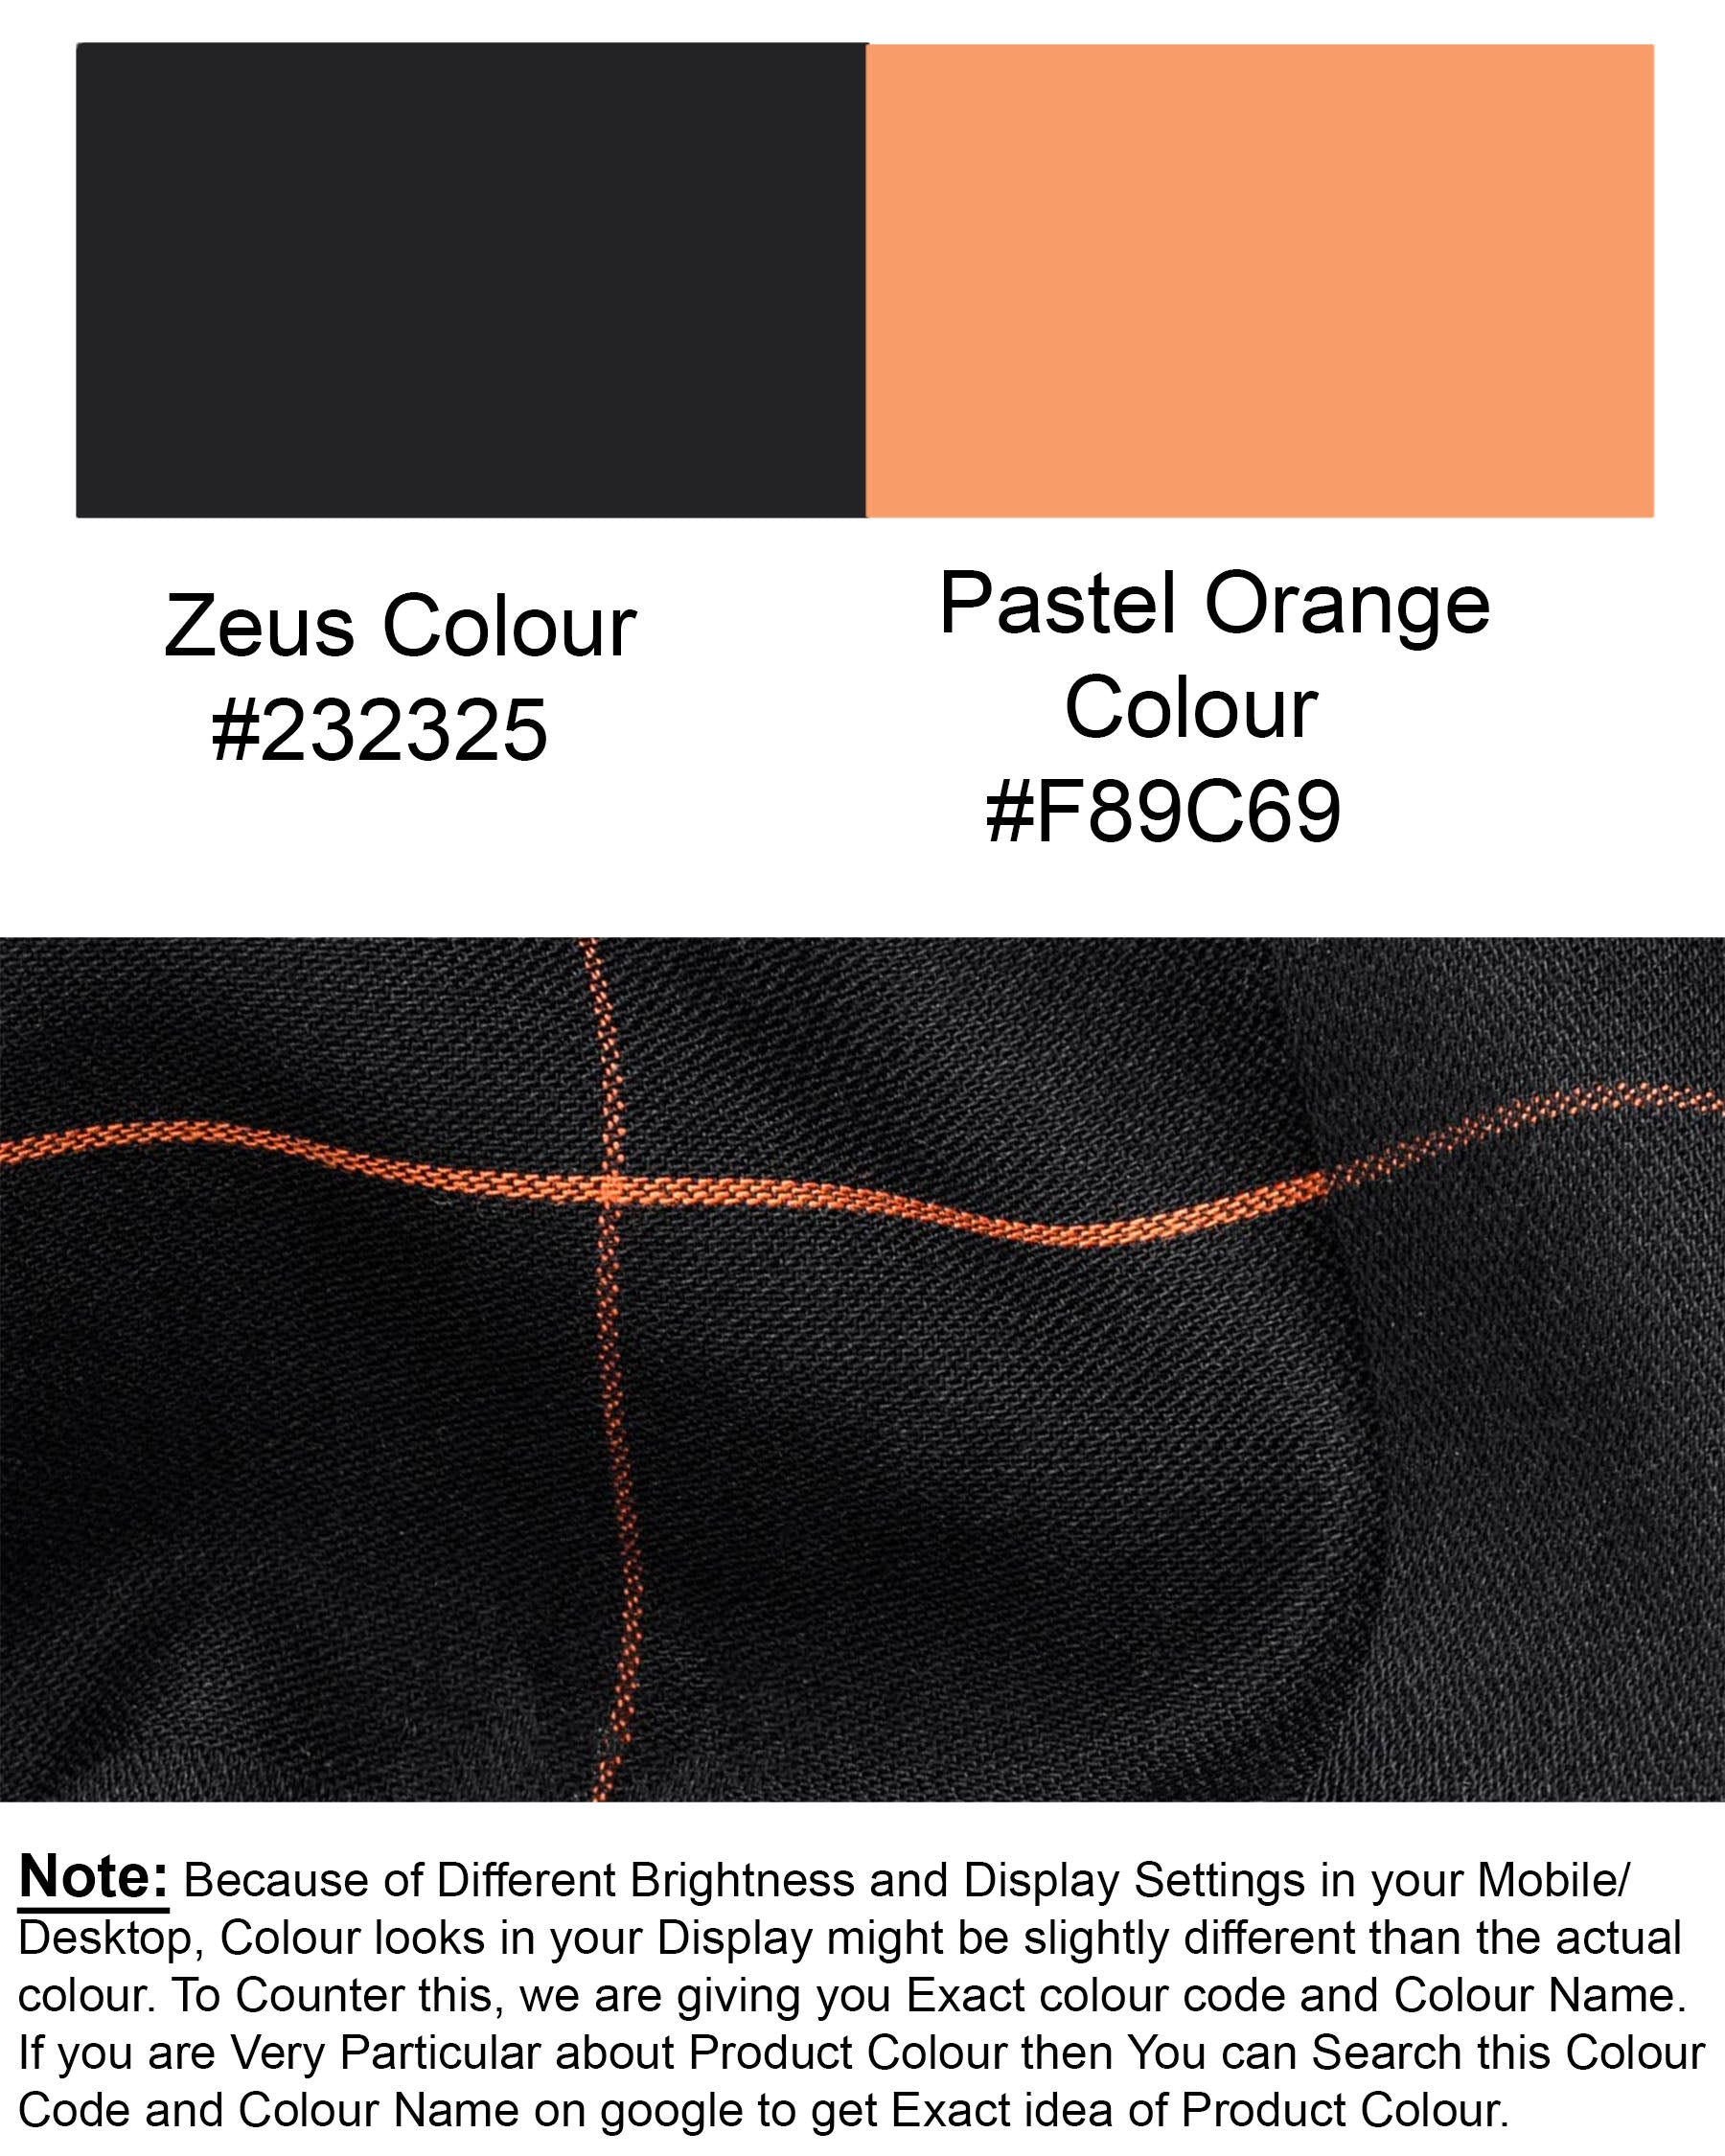 Zeus Black and Pastel Orange Windowpane Dobby Textured Premium Giza Cotton Shirt 6858-CA-38,6858-CA-38,6858-CA-39,6858-CA-39,6858-CA-40,6858-CA-40,6858-CA-42,6858-CA-42,6858-CA-44,6858-CA-44,6858-CA-46,6858-CA-46,6858-CA-48,6858-CA-48,6858-CA-50,6858-CA-50,6858-CA-52,6858-CA-52